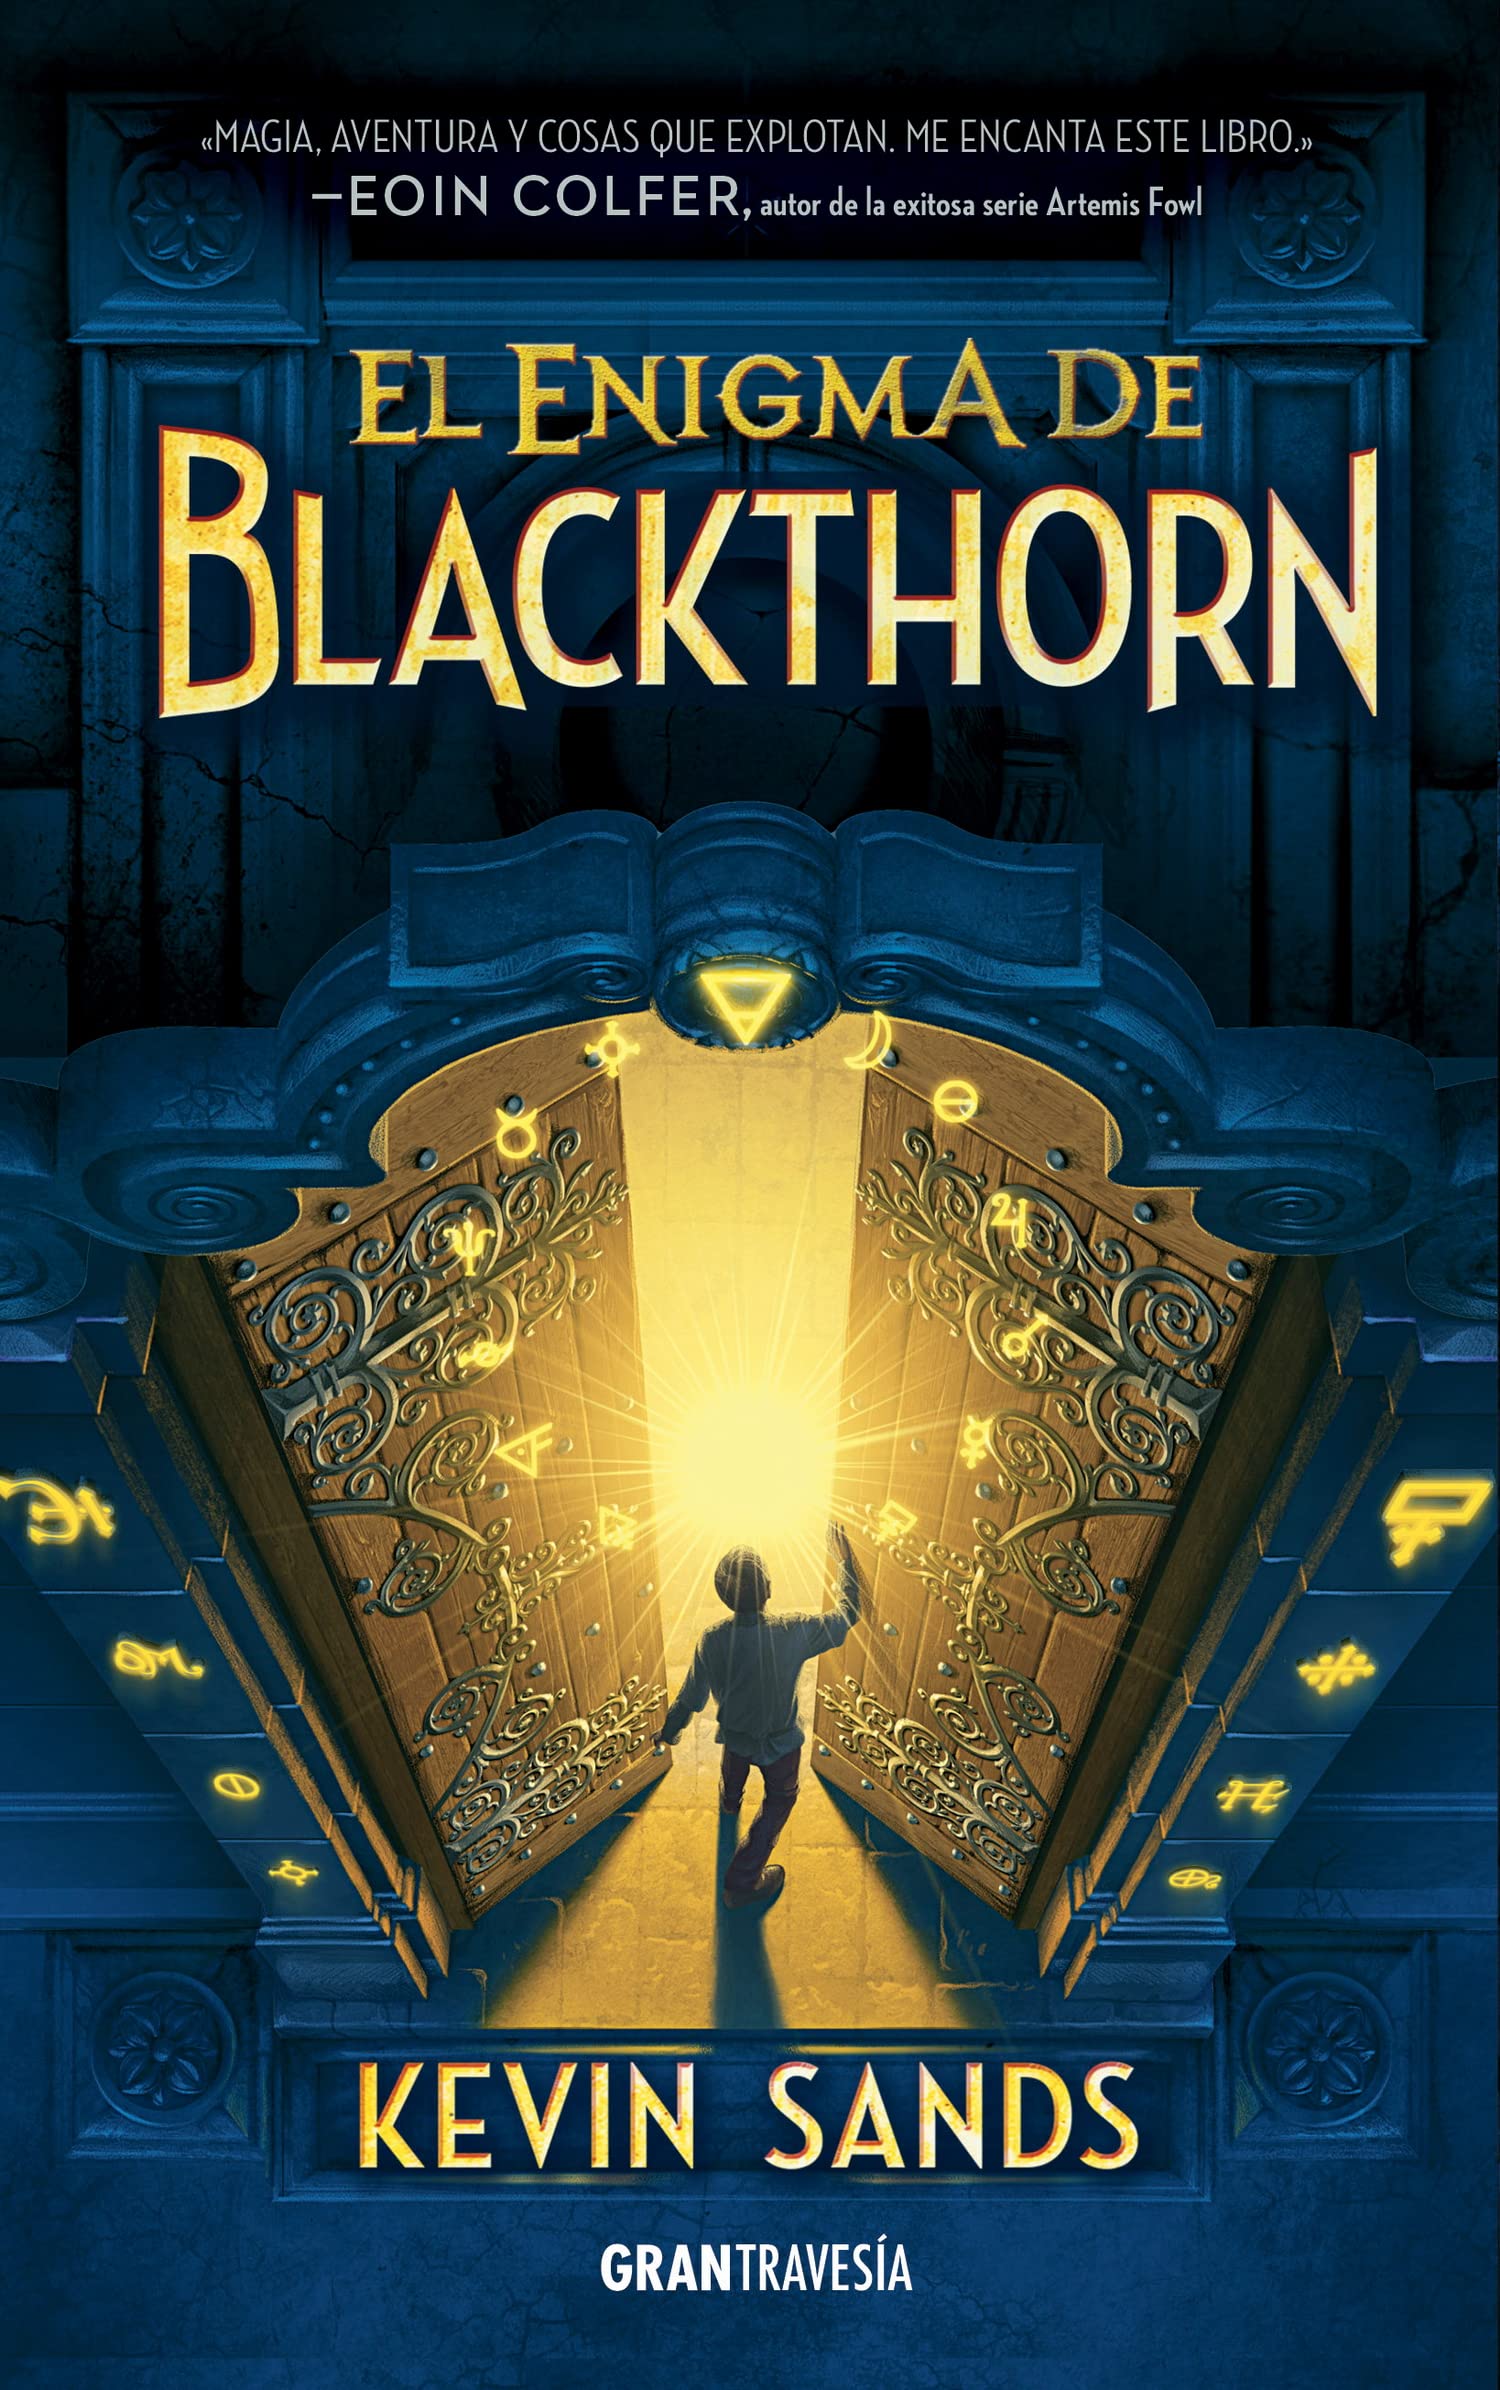 Libro: El enigma de Blackthorn por Kevin Sands